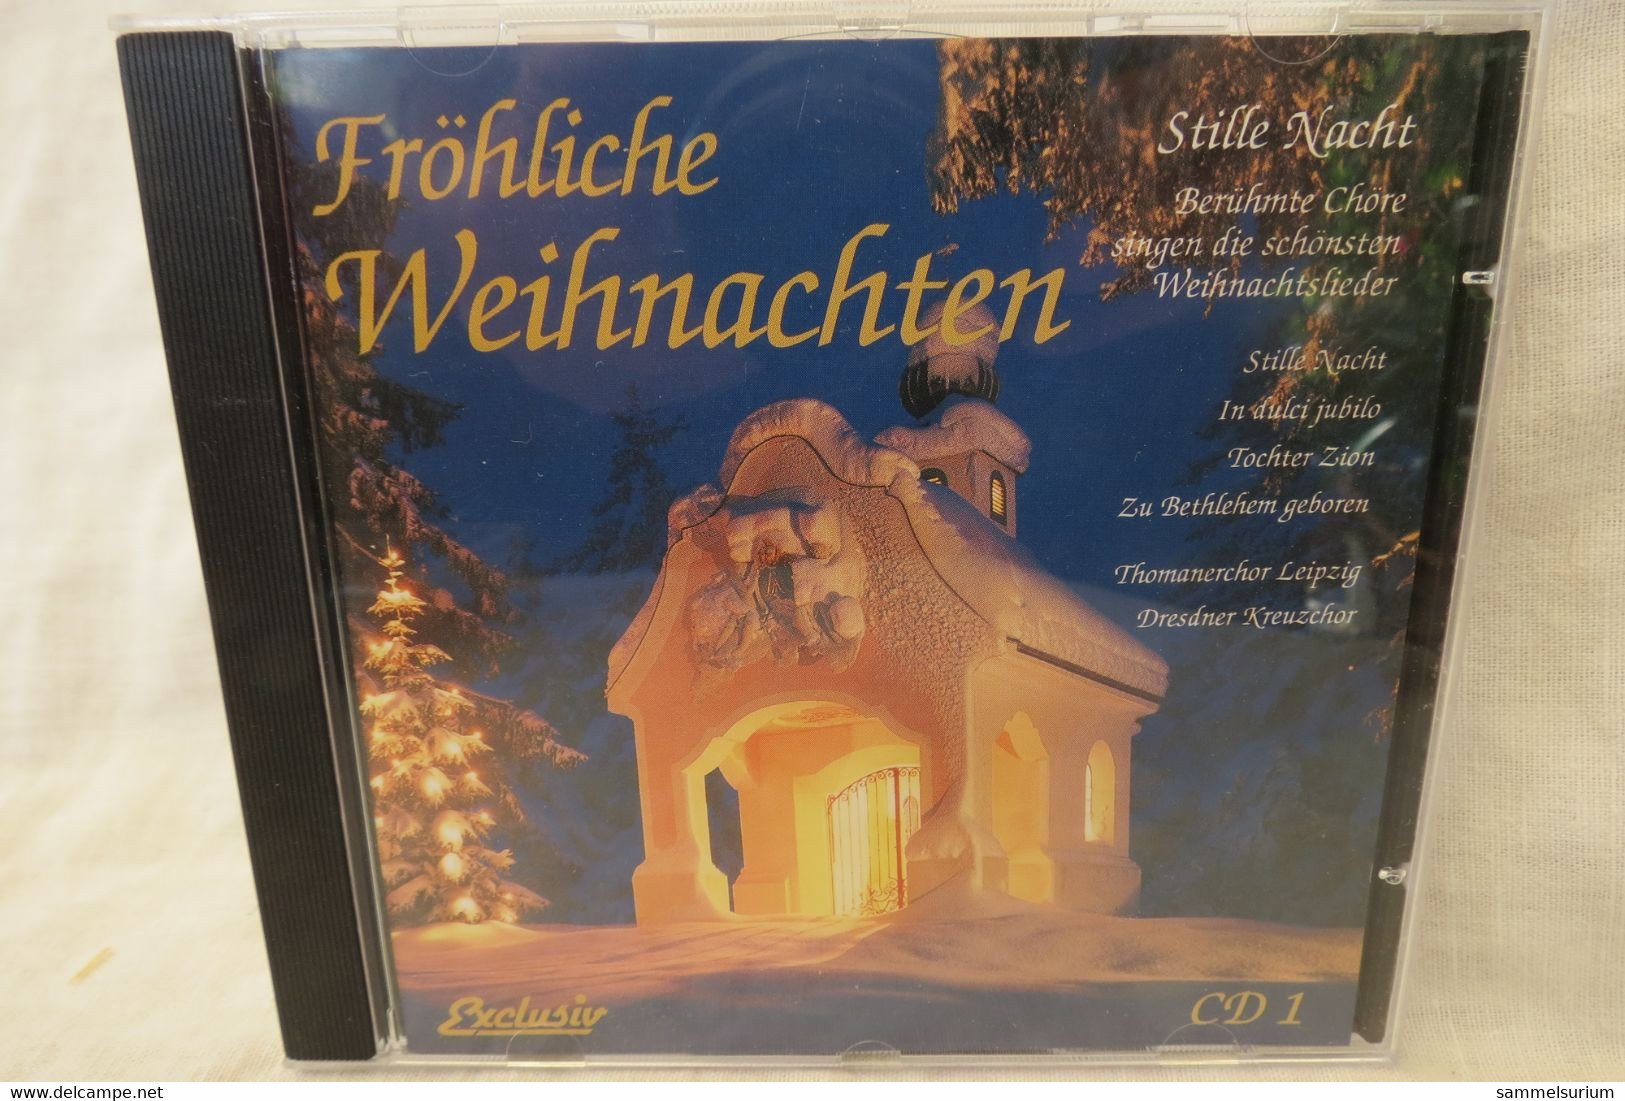 4 CDs "Fröhliche Weihnachten" Berühmte Chöre, Internationale Weihnachtslieder, Gitarrenmusik, Stars Singen Weihnachtslie - Christmas Carols